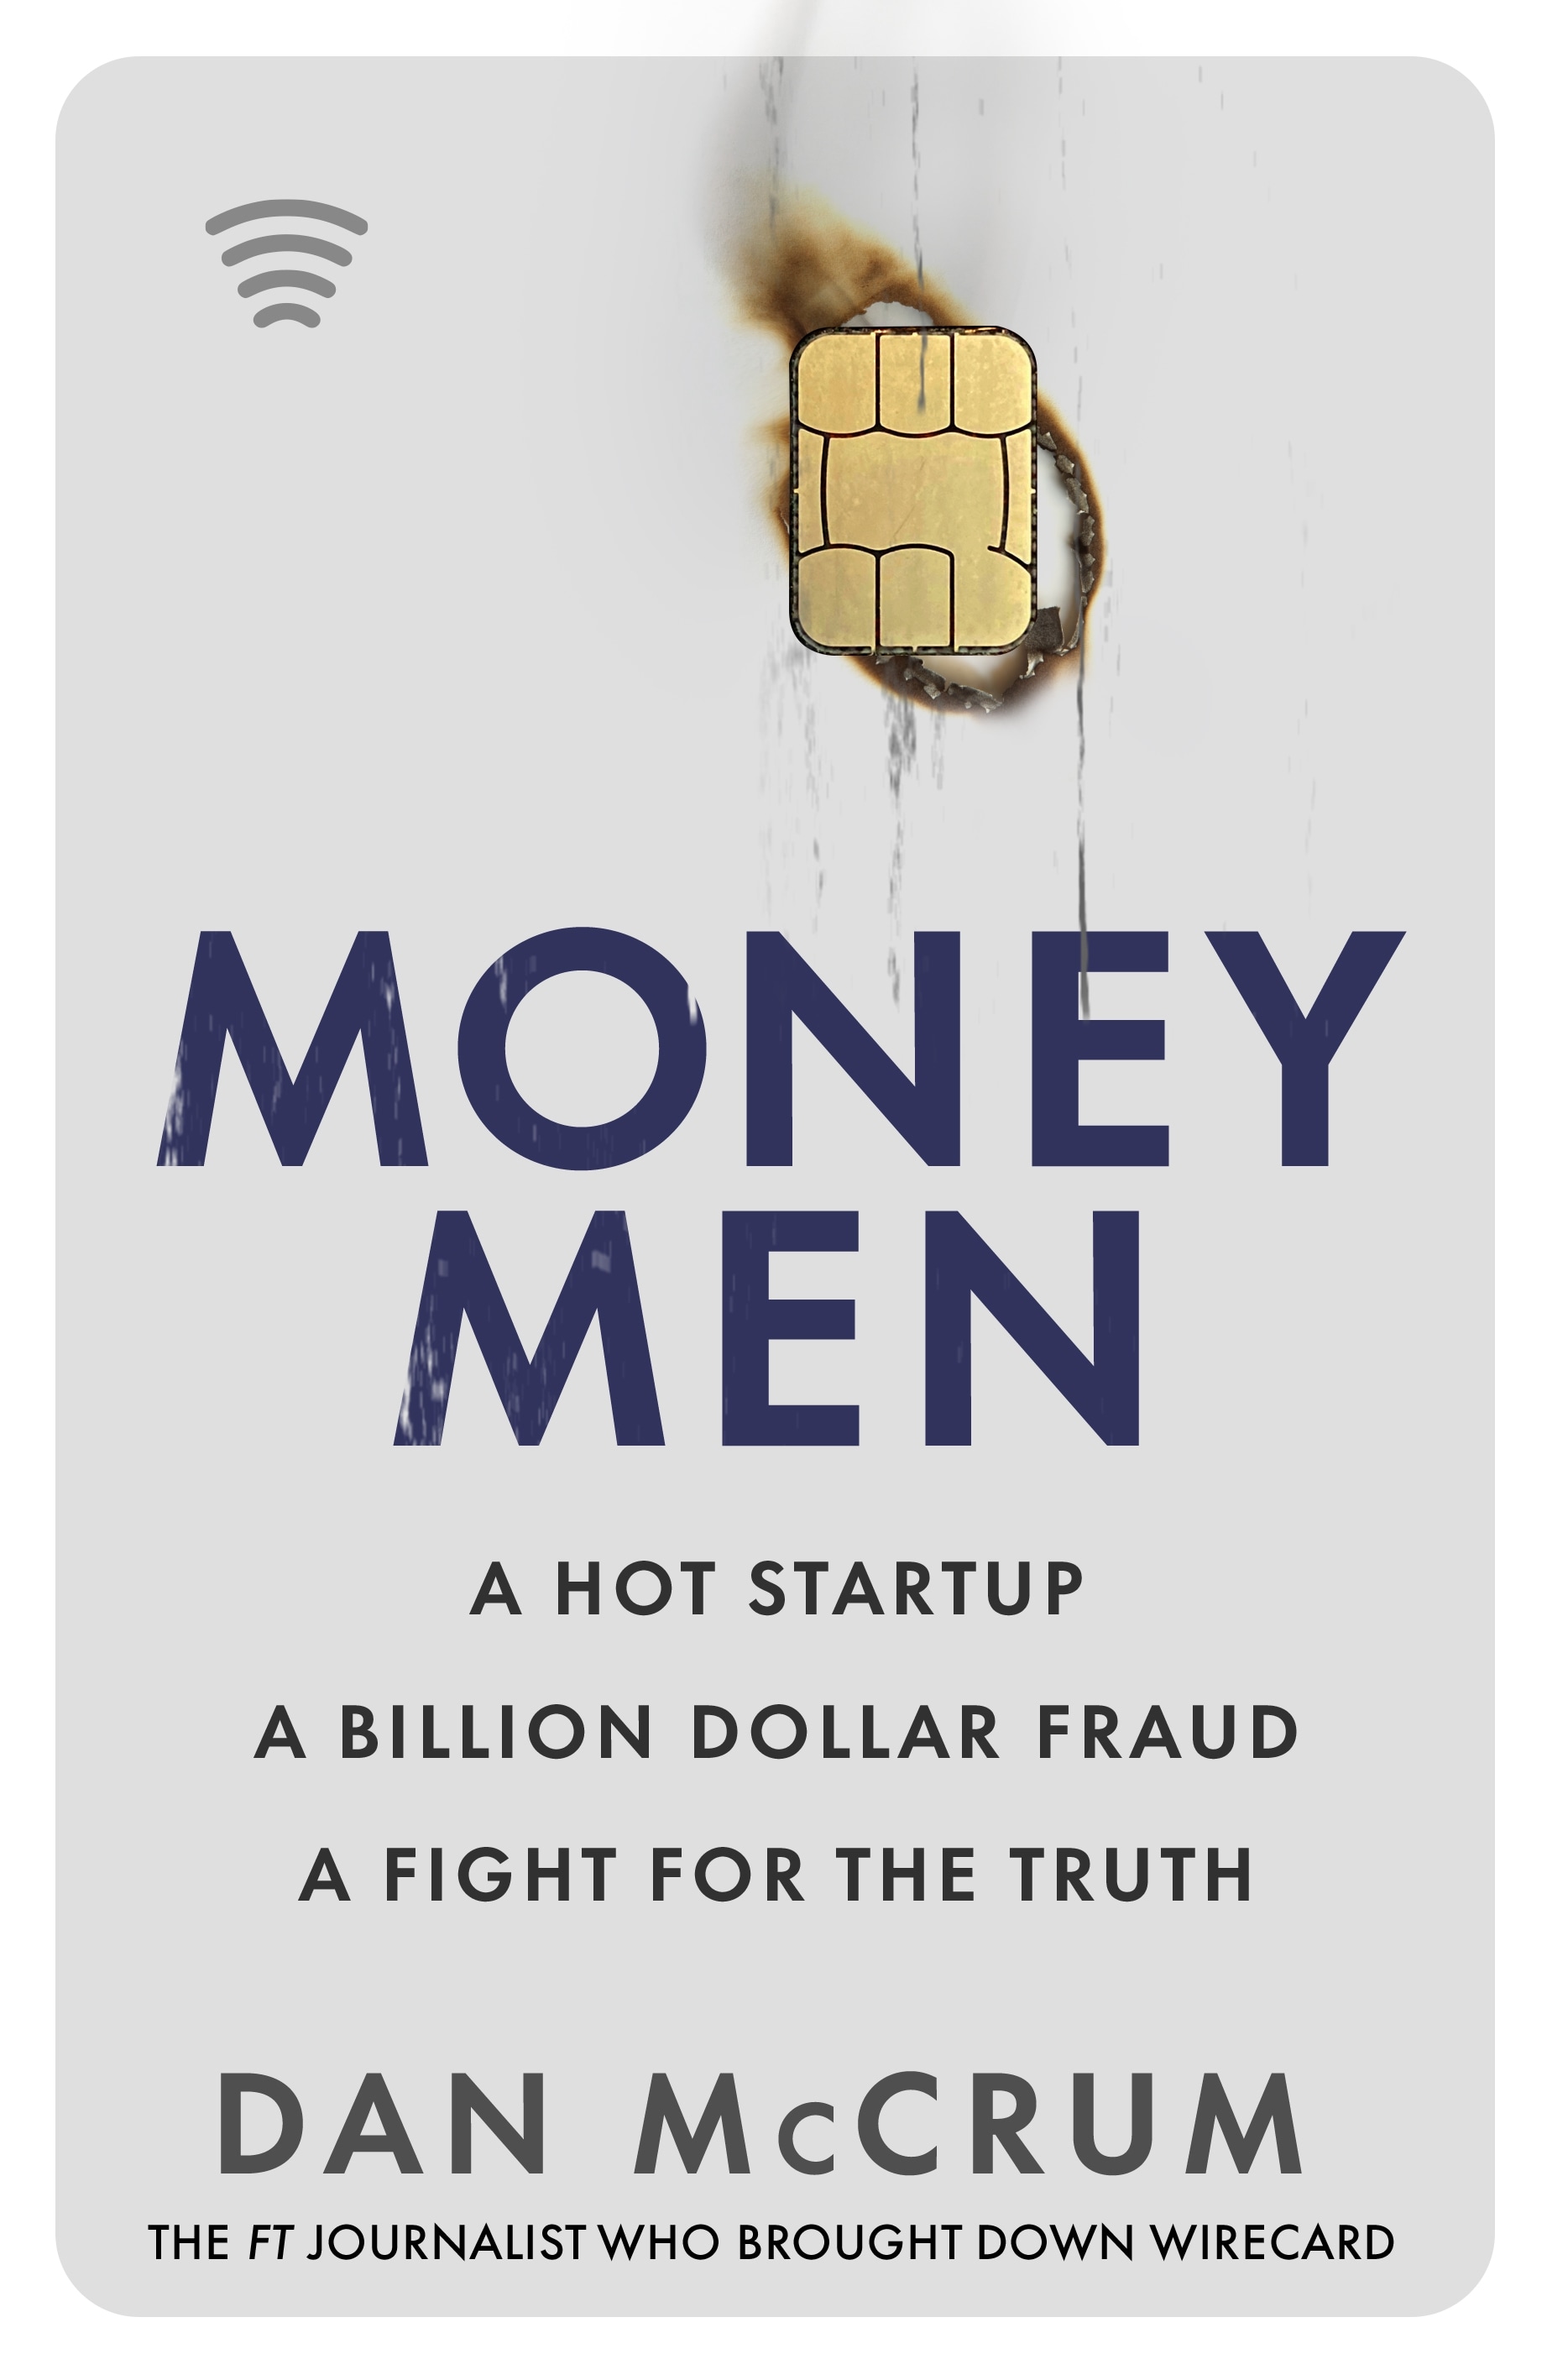 Book “Money Men” by Dan McCrum — June 16, 2022